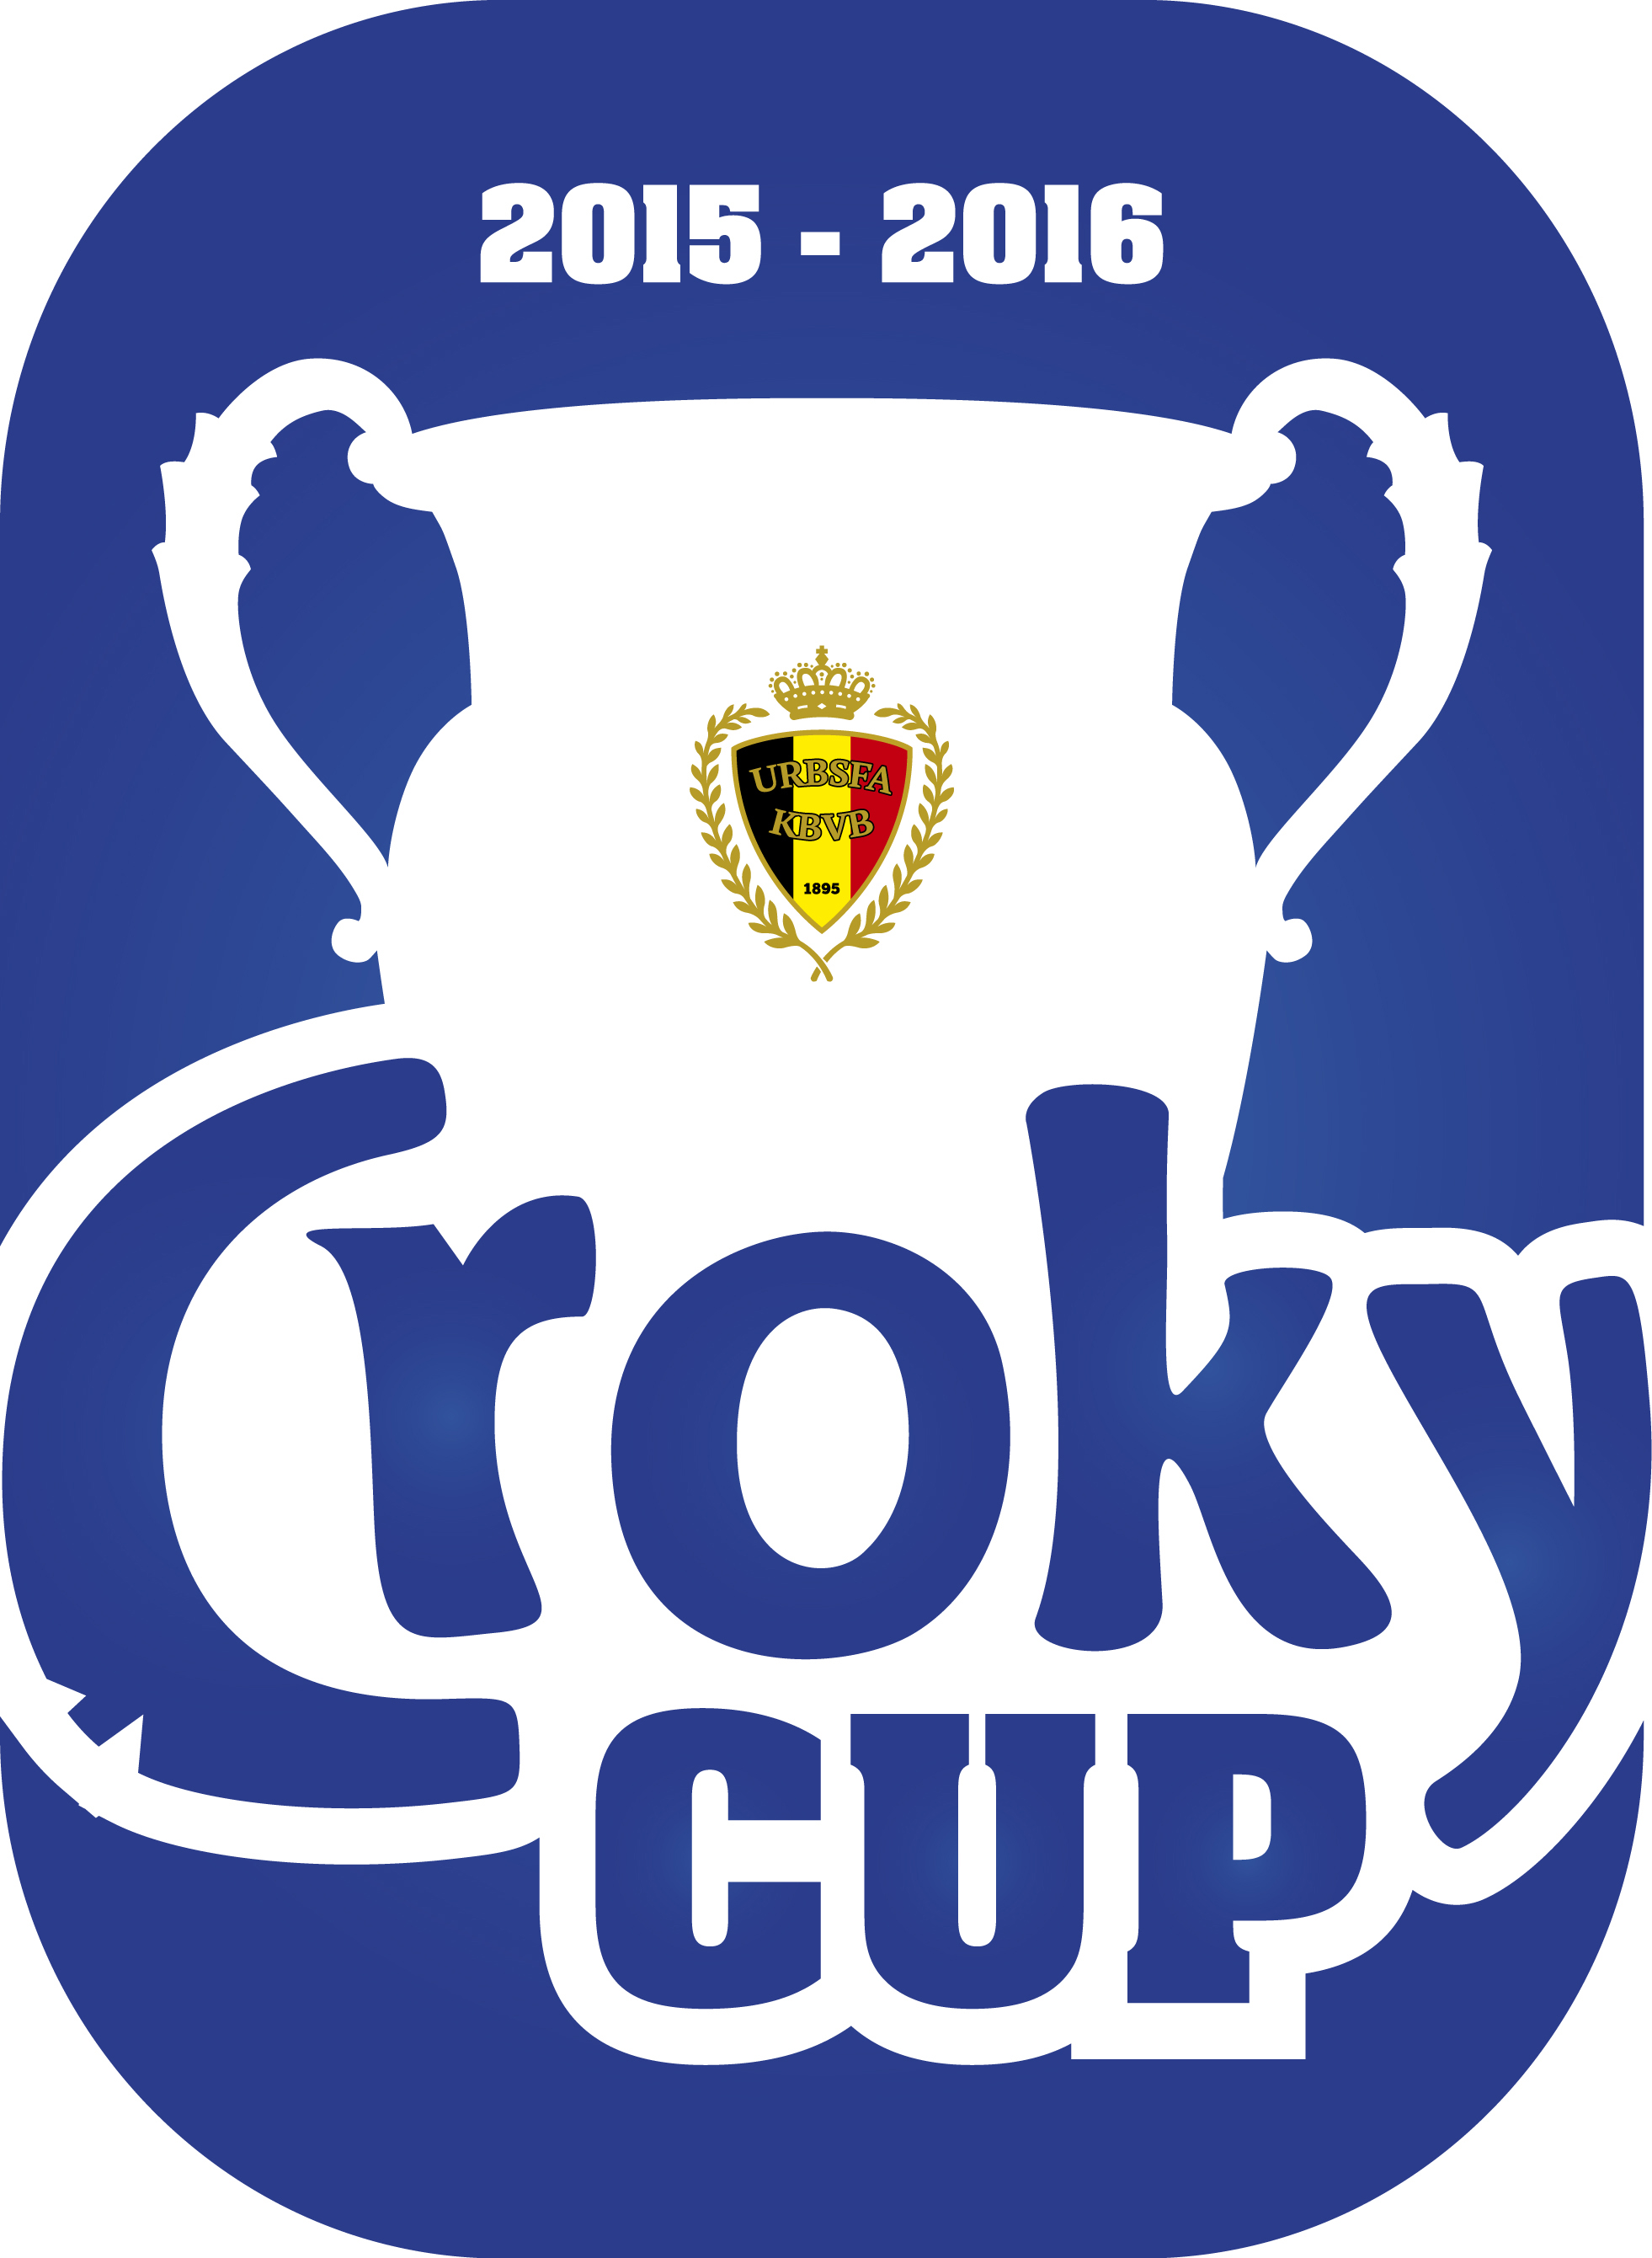 amusement Besmettelijke ziekte Milieuactivist Beker van België' wordt 'Croky Cup'